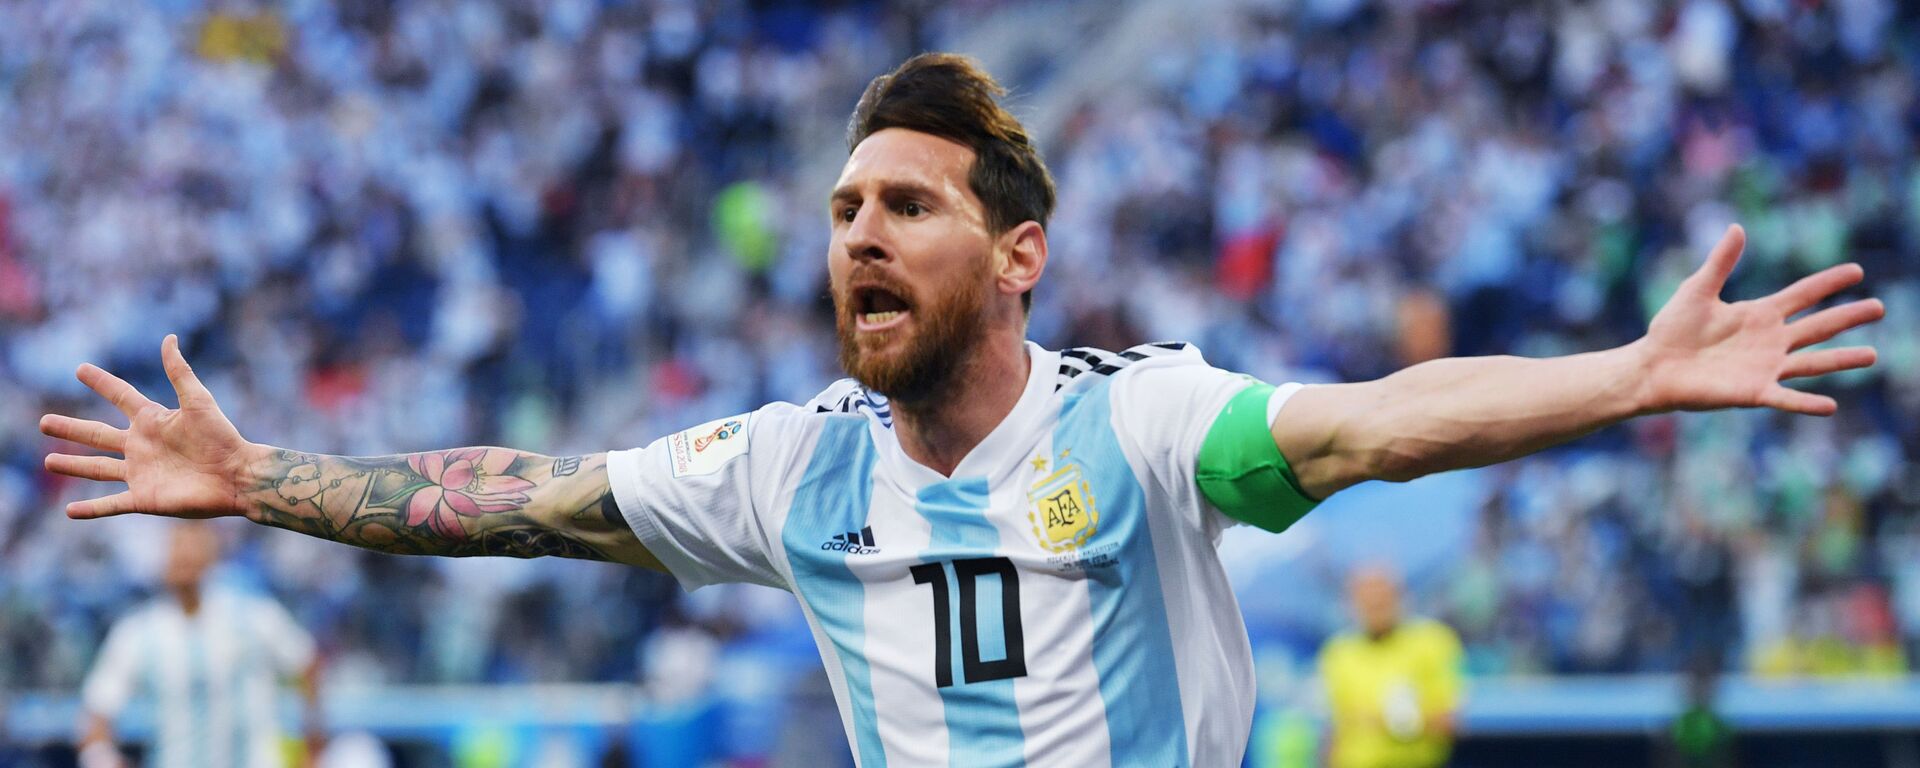 Lionel Messi, delantero de la selección argentina de fútbol - Sputnik Mundo, 1920, 12.10.2020